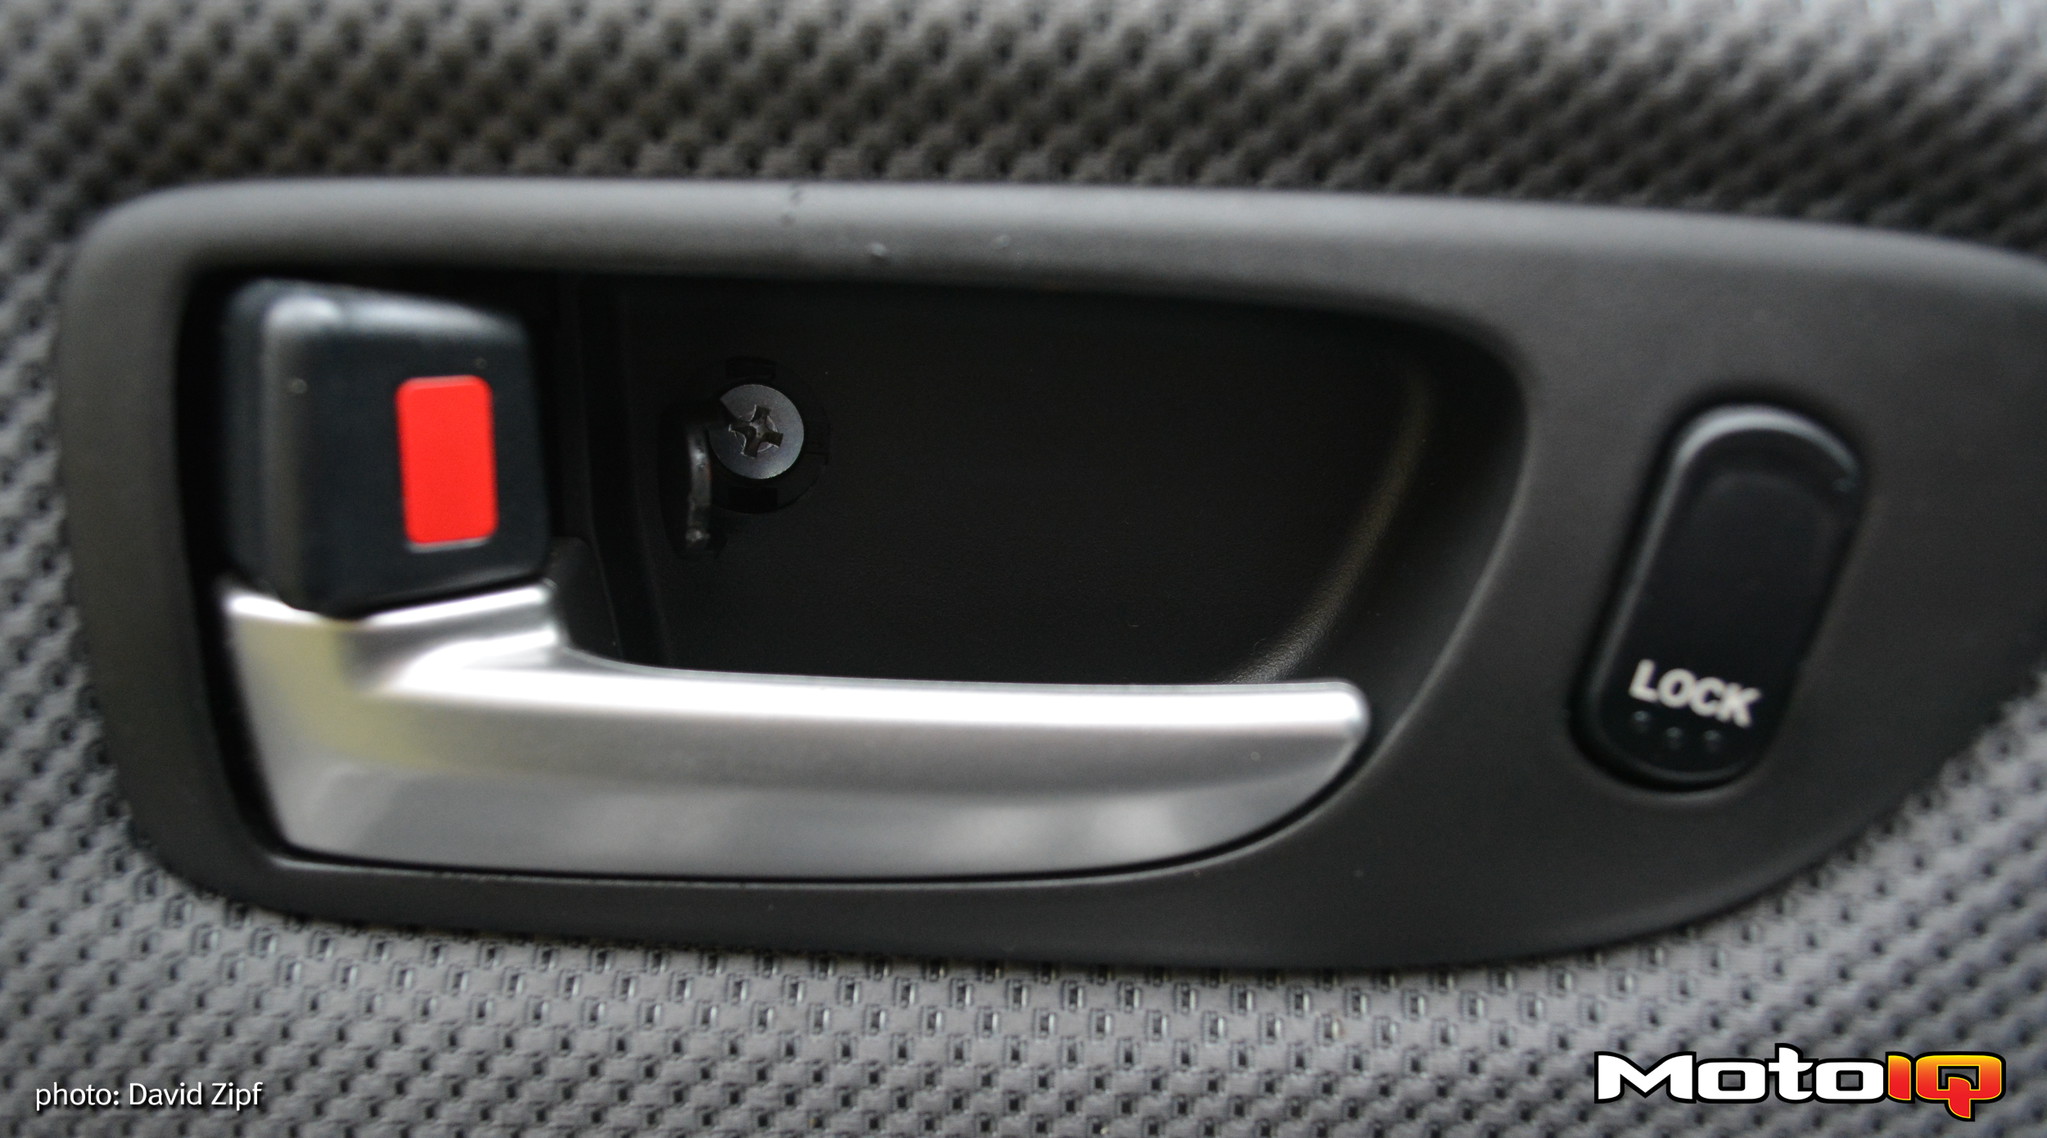 Tech Tip: How to Fix a Broken Mazda Door Handle